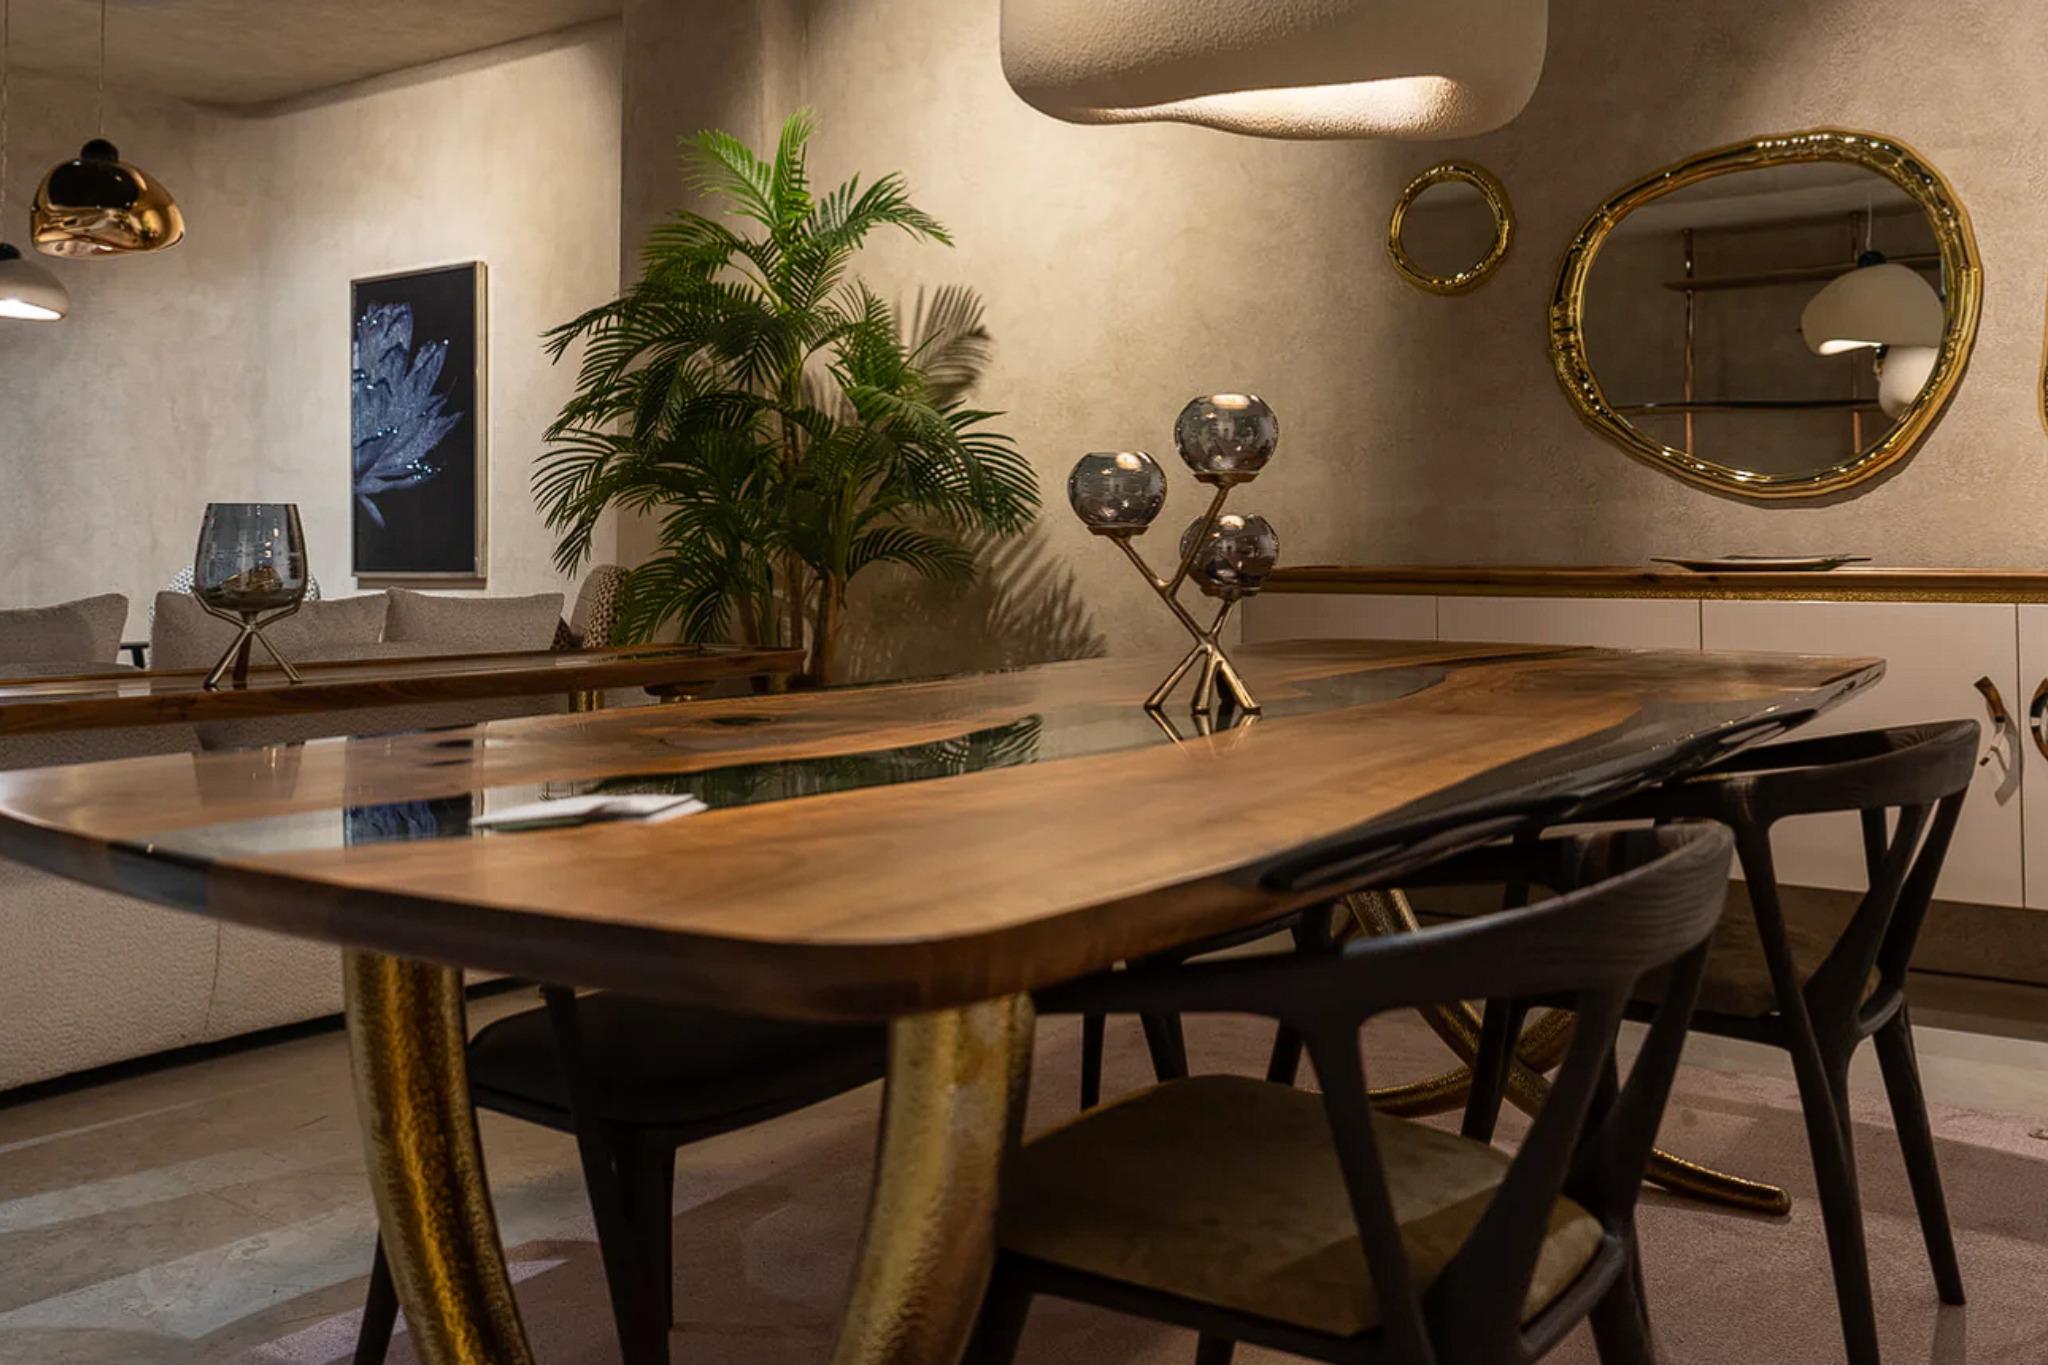 Fait main Table Avorio : Table en aluminium martelé inspirée d'un tapis d'éléphant en vente